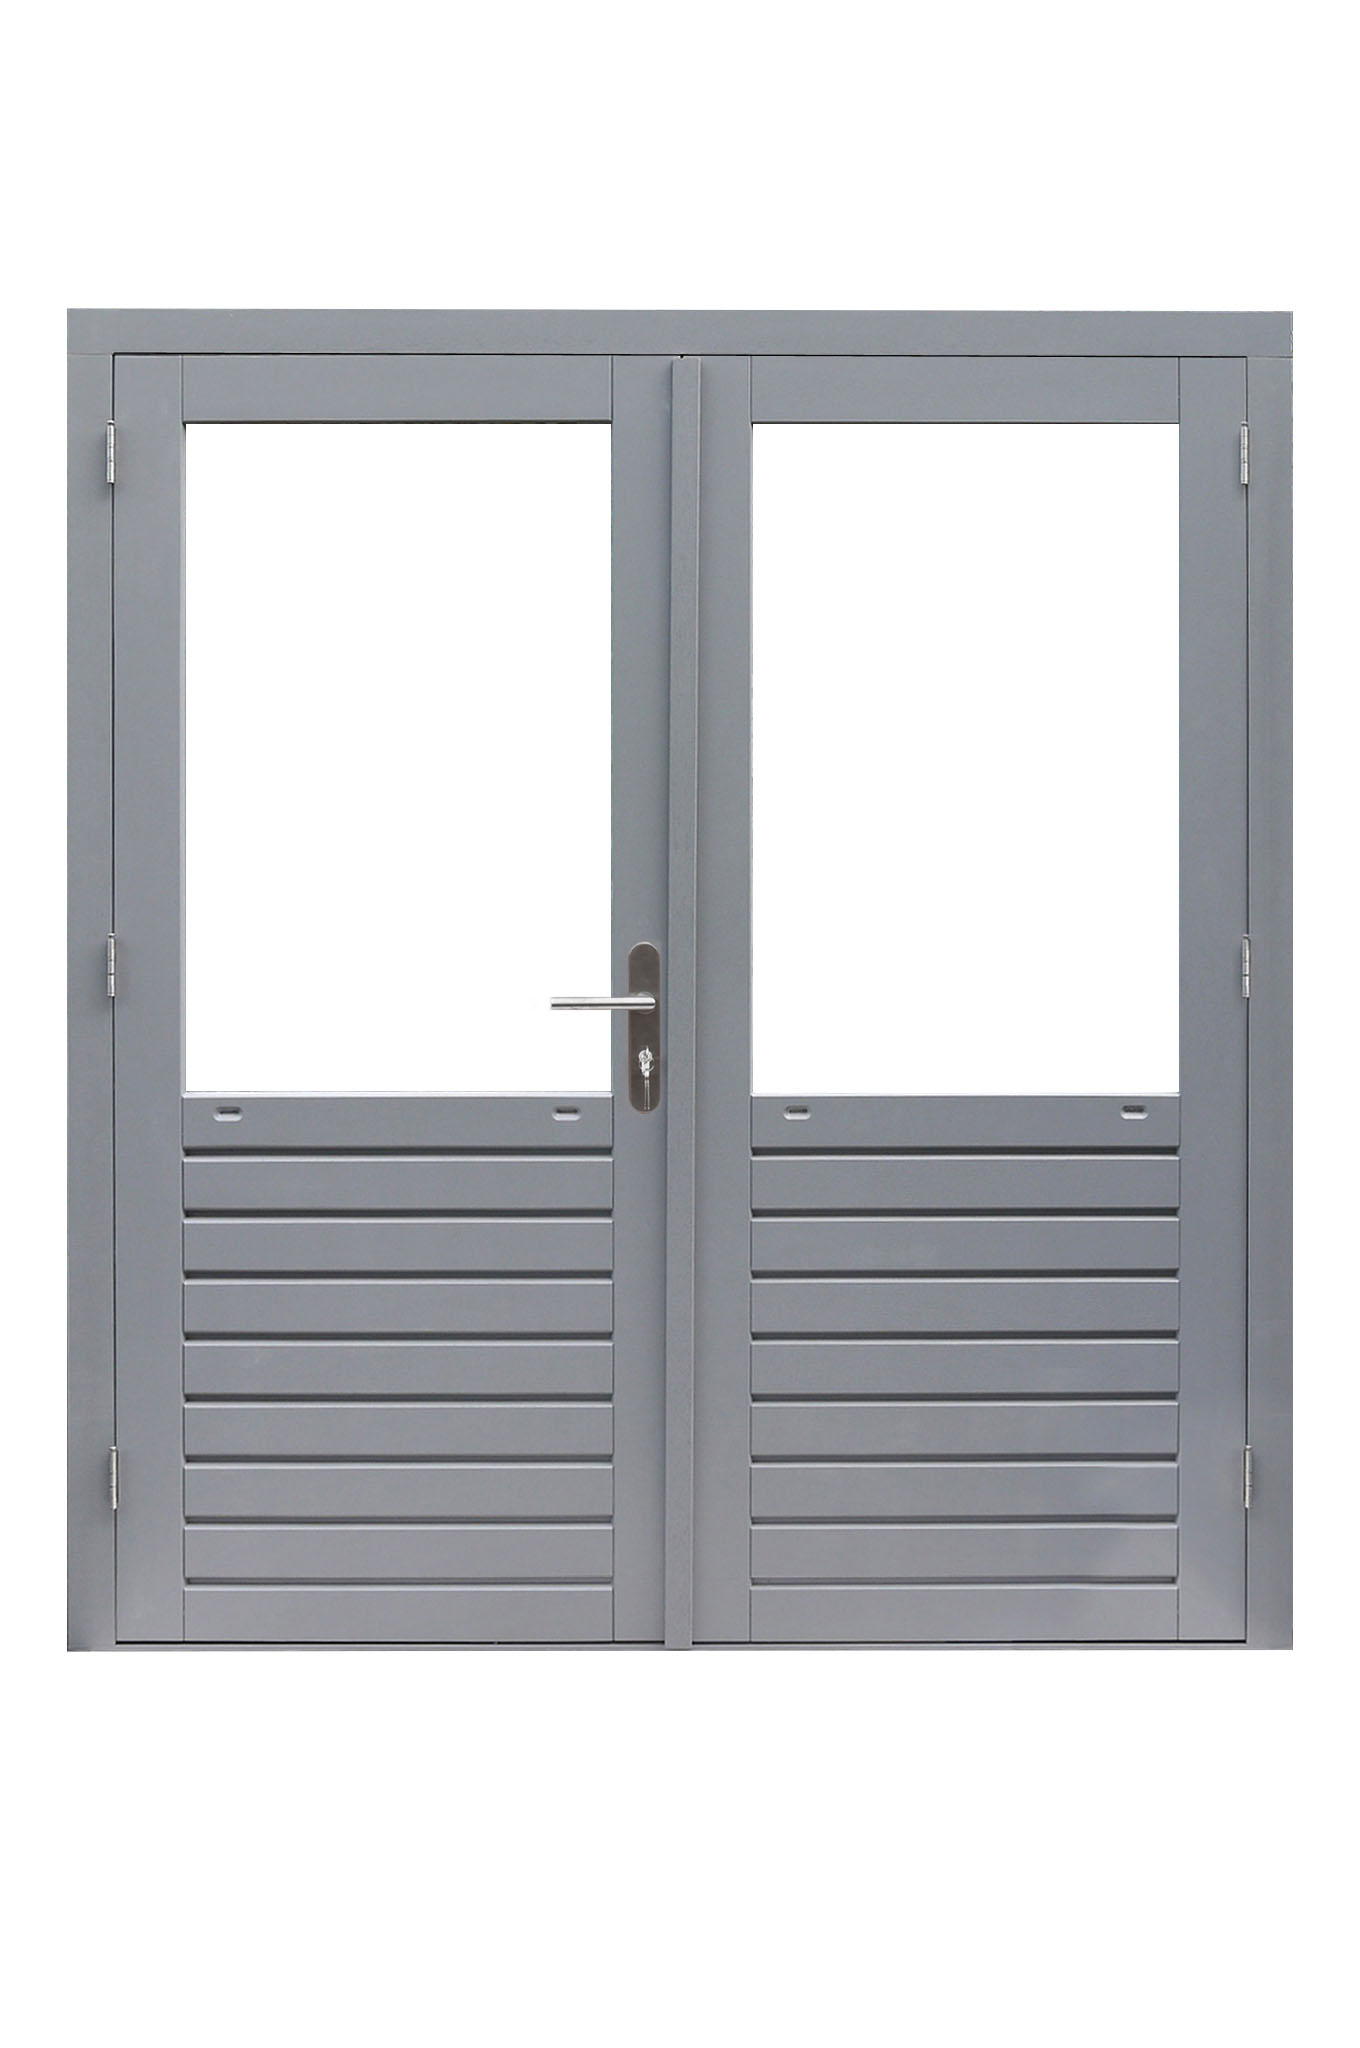 Hardhouten dubbele 1-ruits deur Prestige met dubbelglas, 202 x 221 cm, grijs gegrond